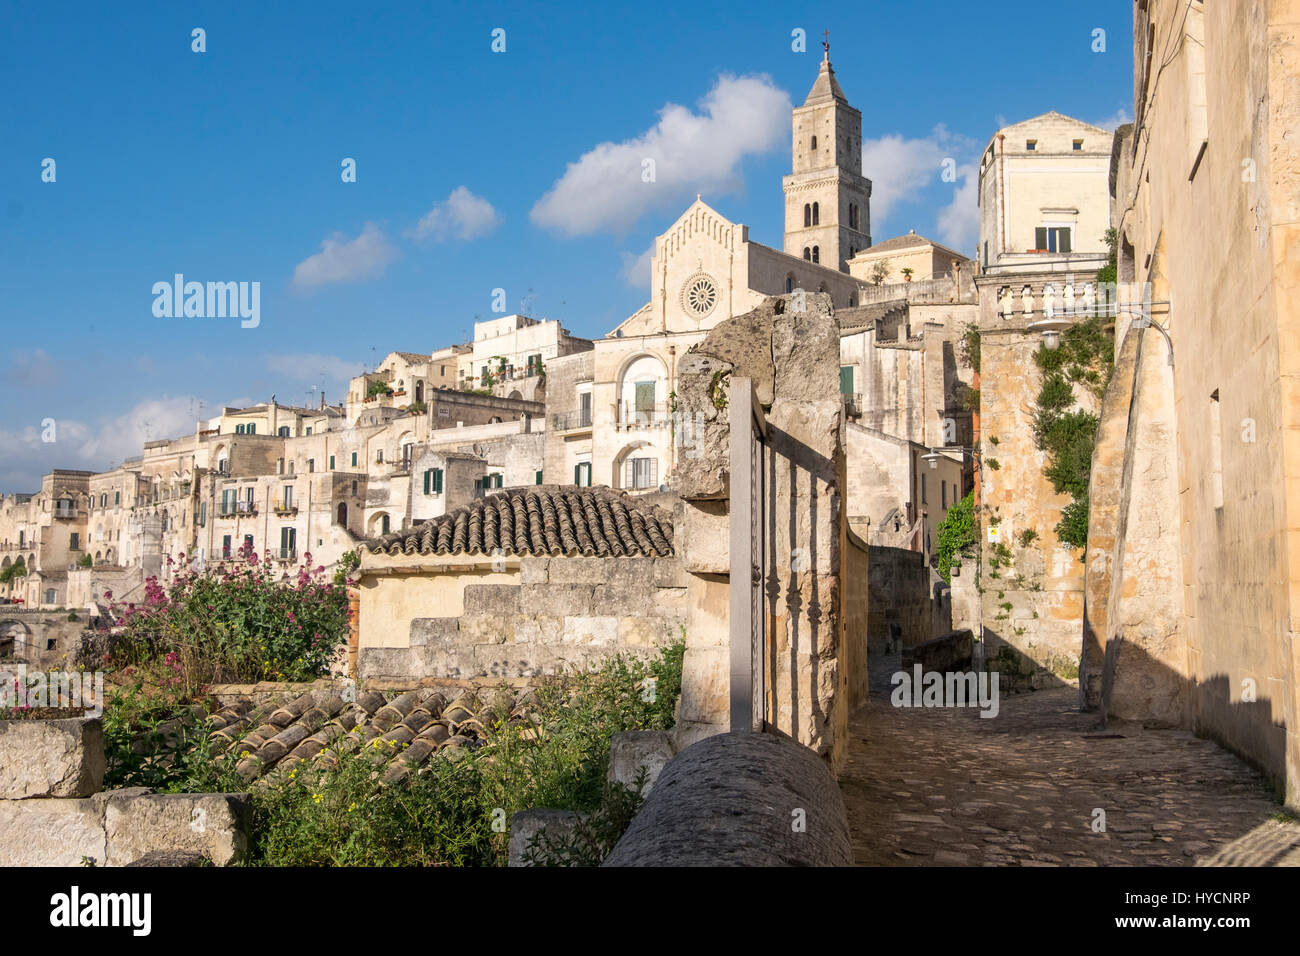 Italia antica città di Matera, Sito del Patrimonio Mondiale e capitale europea della cultura per il 2019. Foto Stock